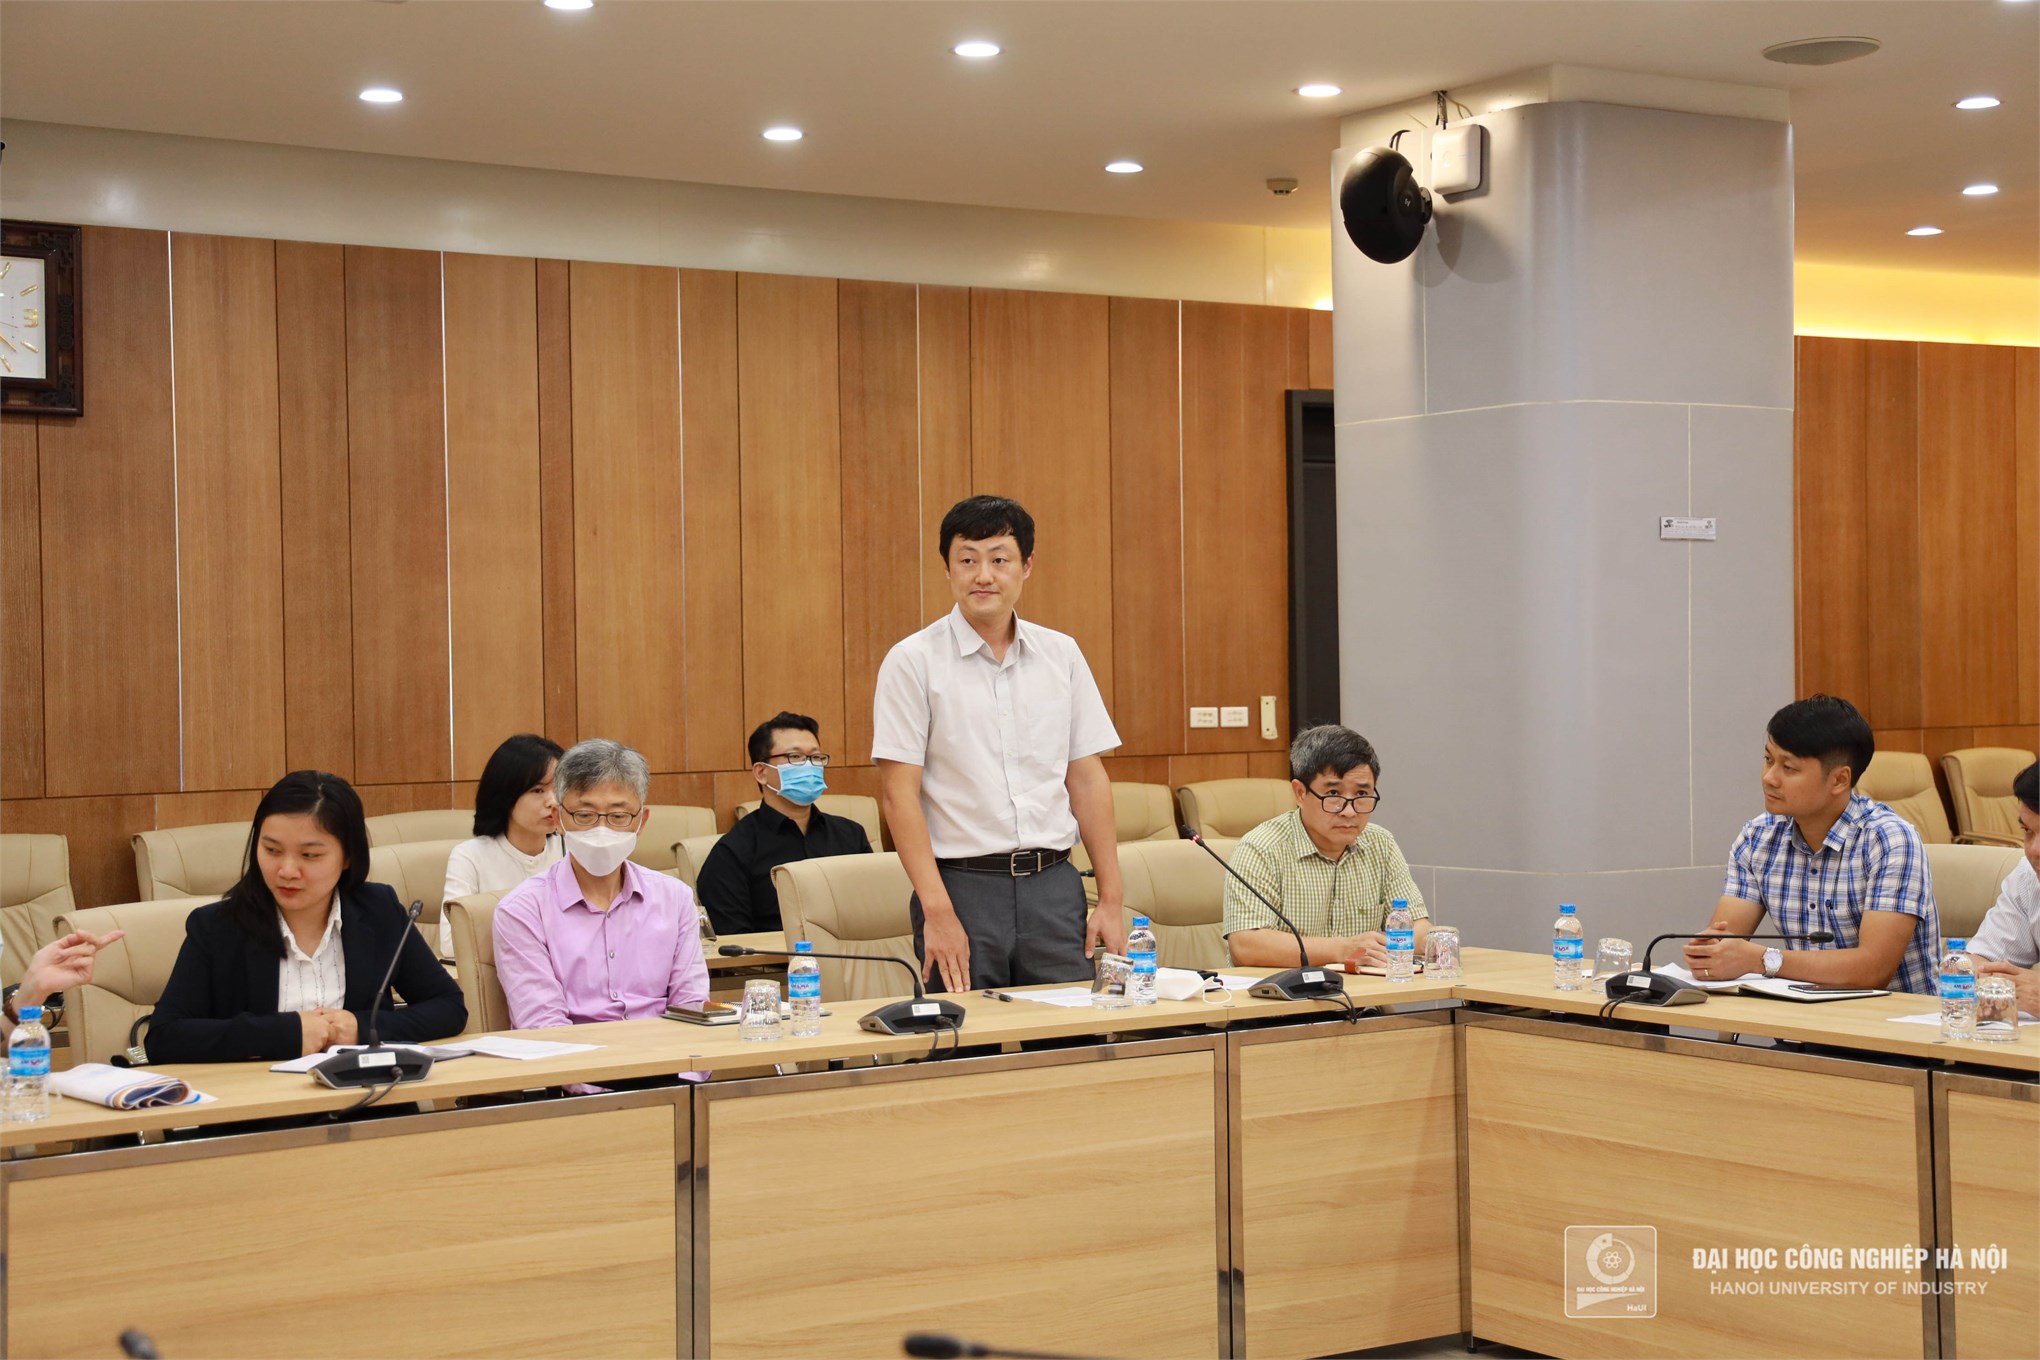 Bế giảng và trao chứng nhận cho các sinh viên khóa đào tạo Dự án VITASK Hàn Quốc